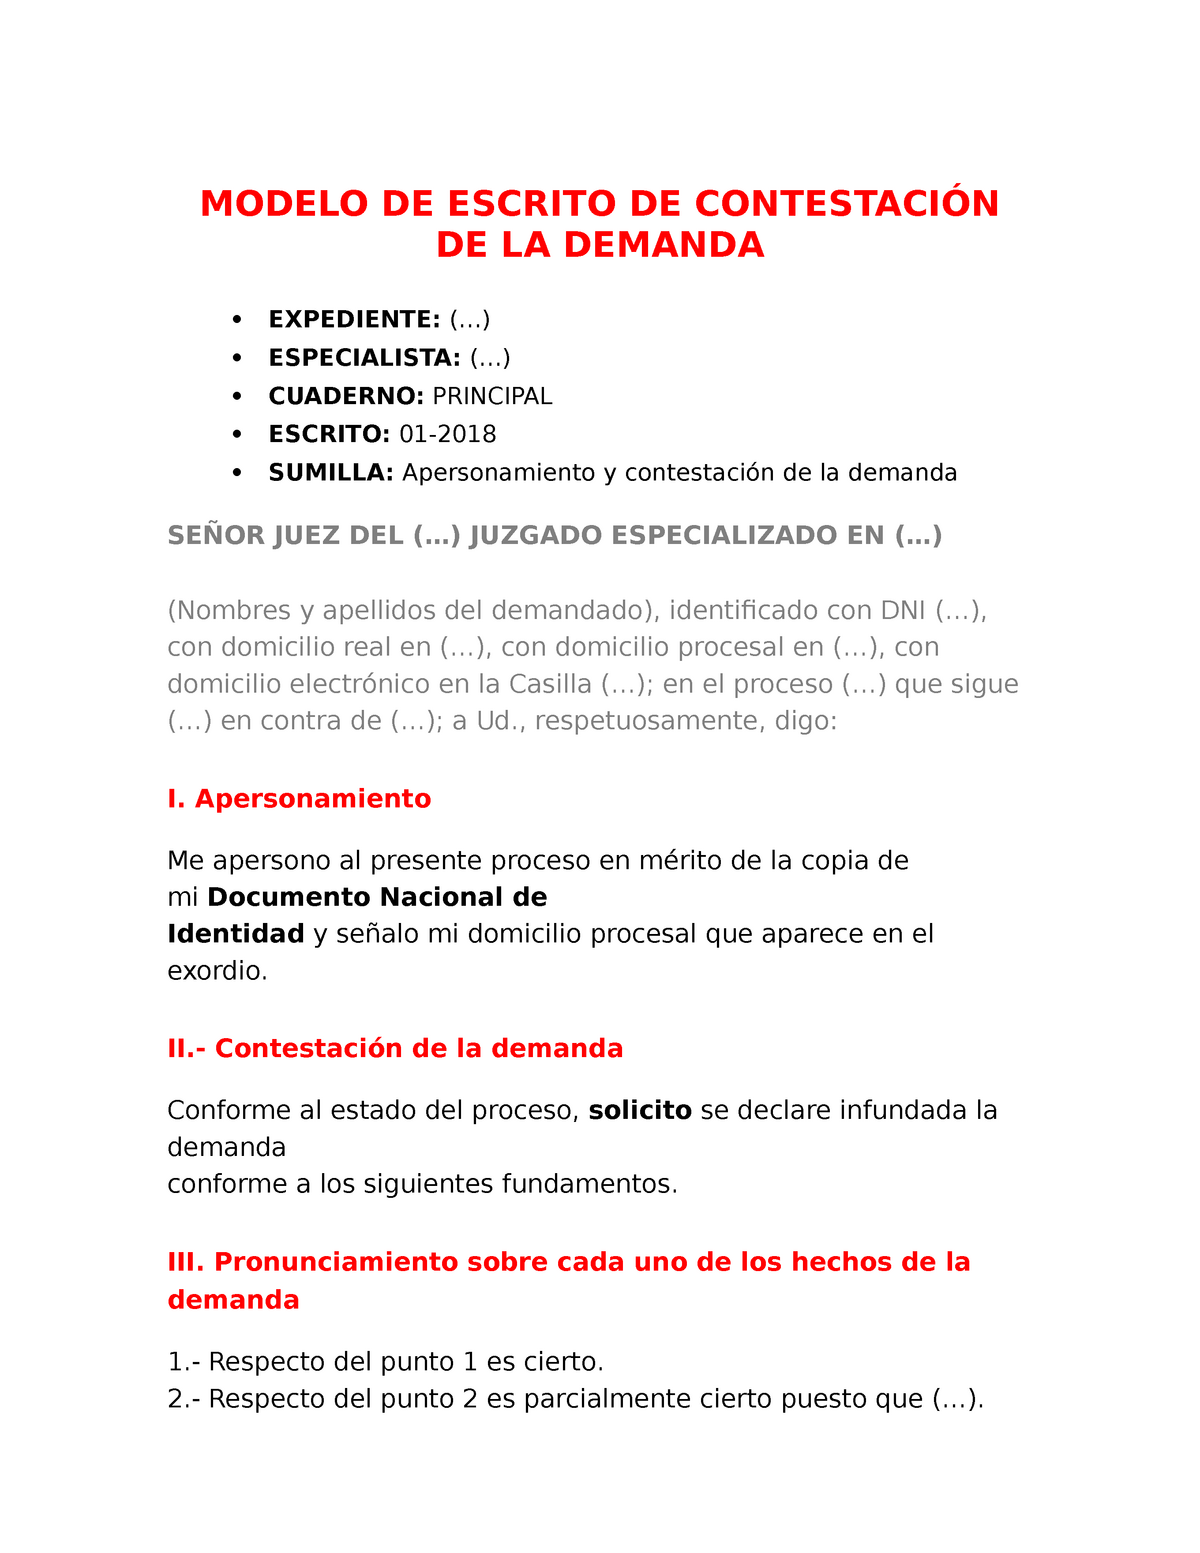 Modelo DE Escrito DE Contestacio N DE LA Demanda - MODELO DE ESCRITO DE  CONTESTACIÓN DE LA DEMANDA  - Studocu